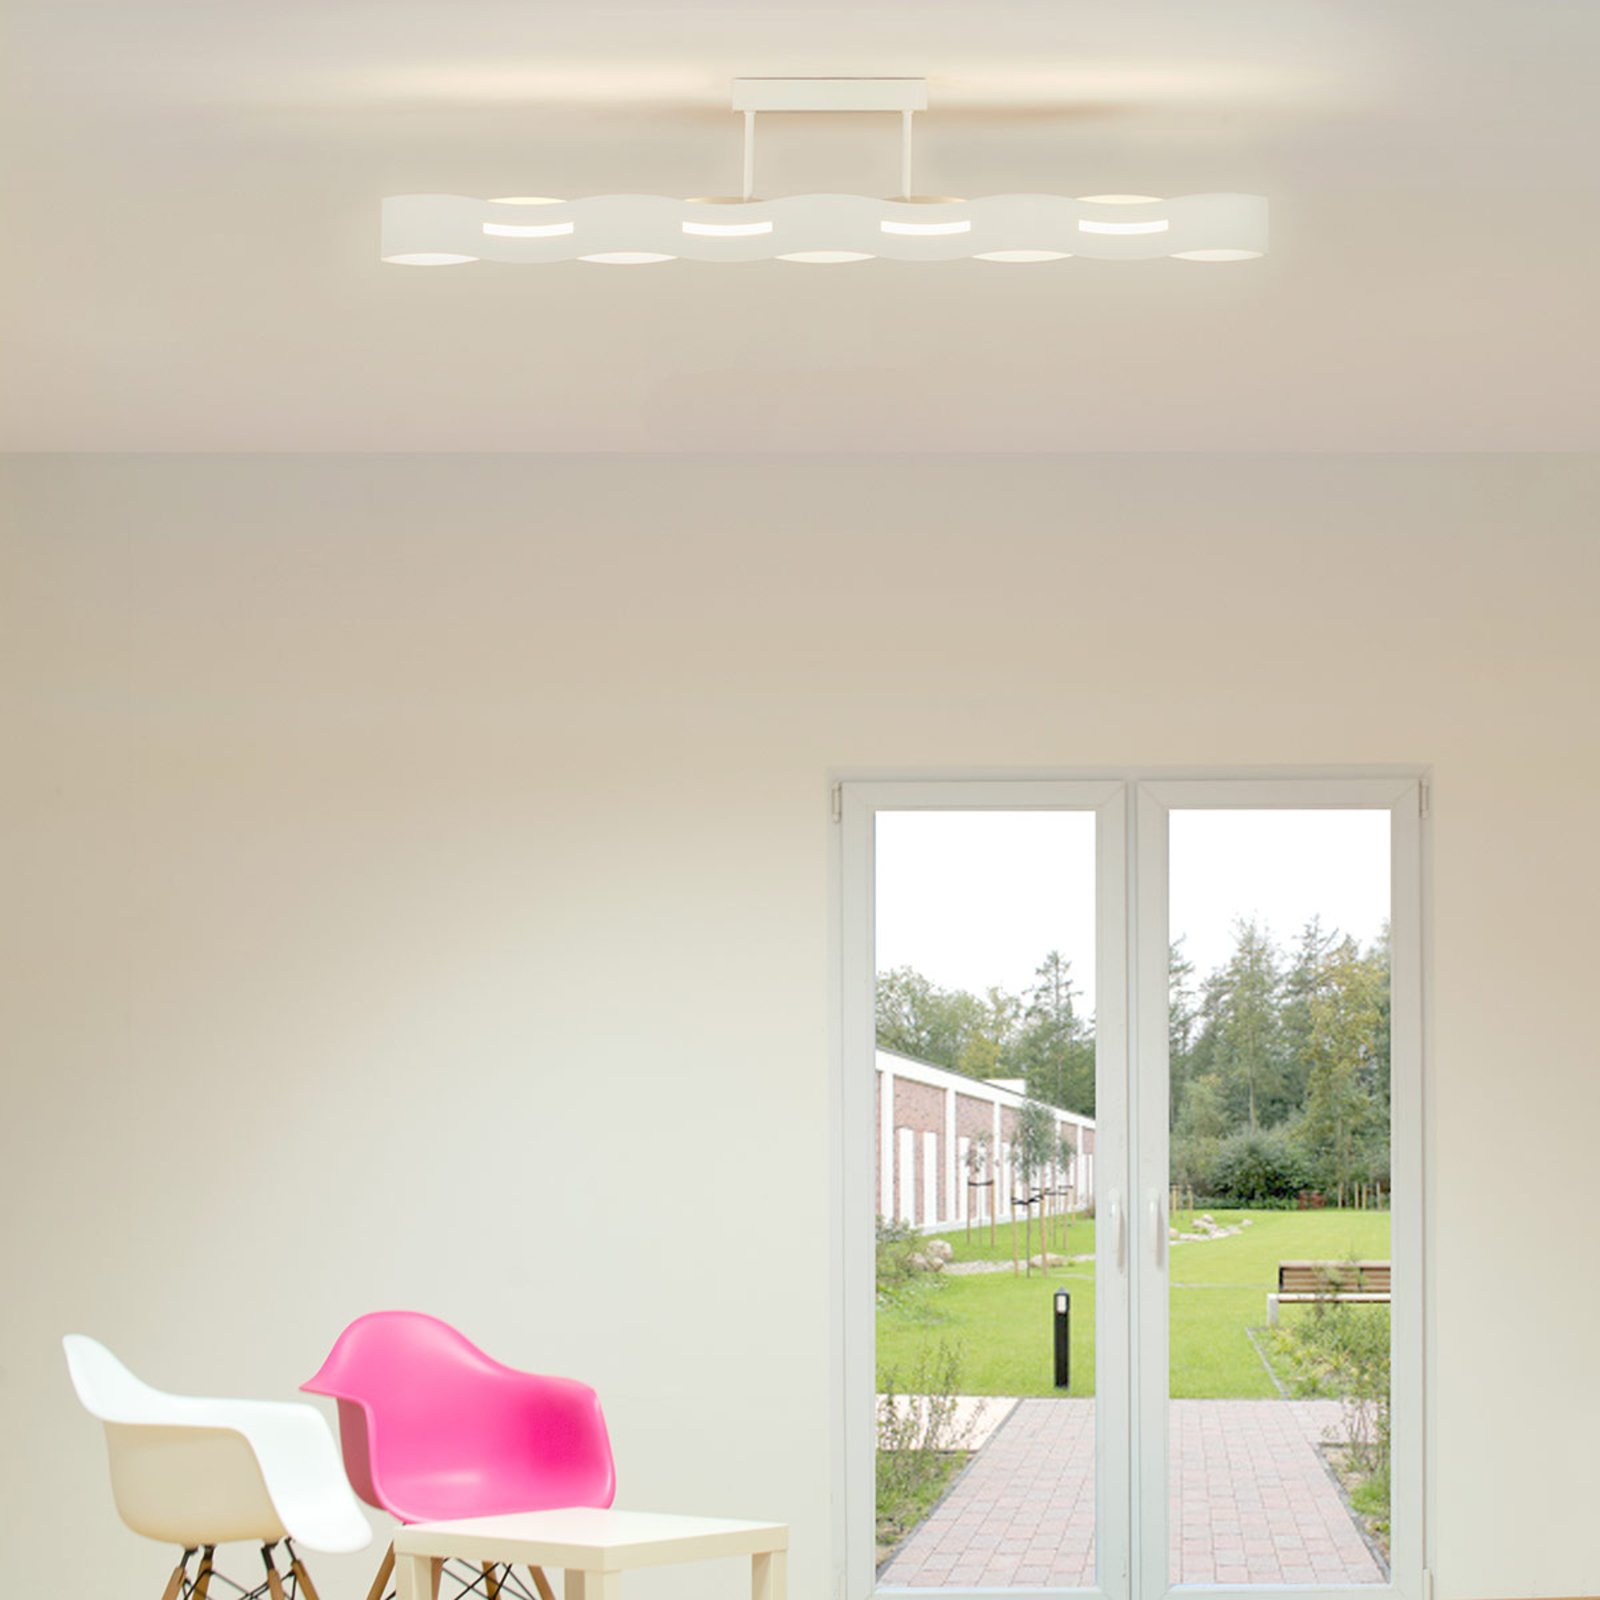 Wave LED ceiling light, white